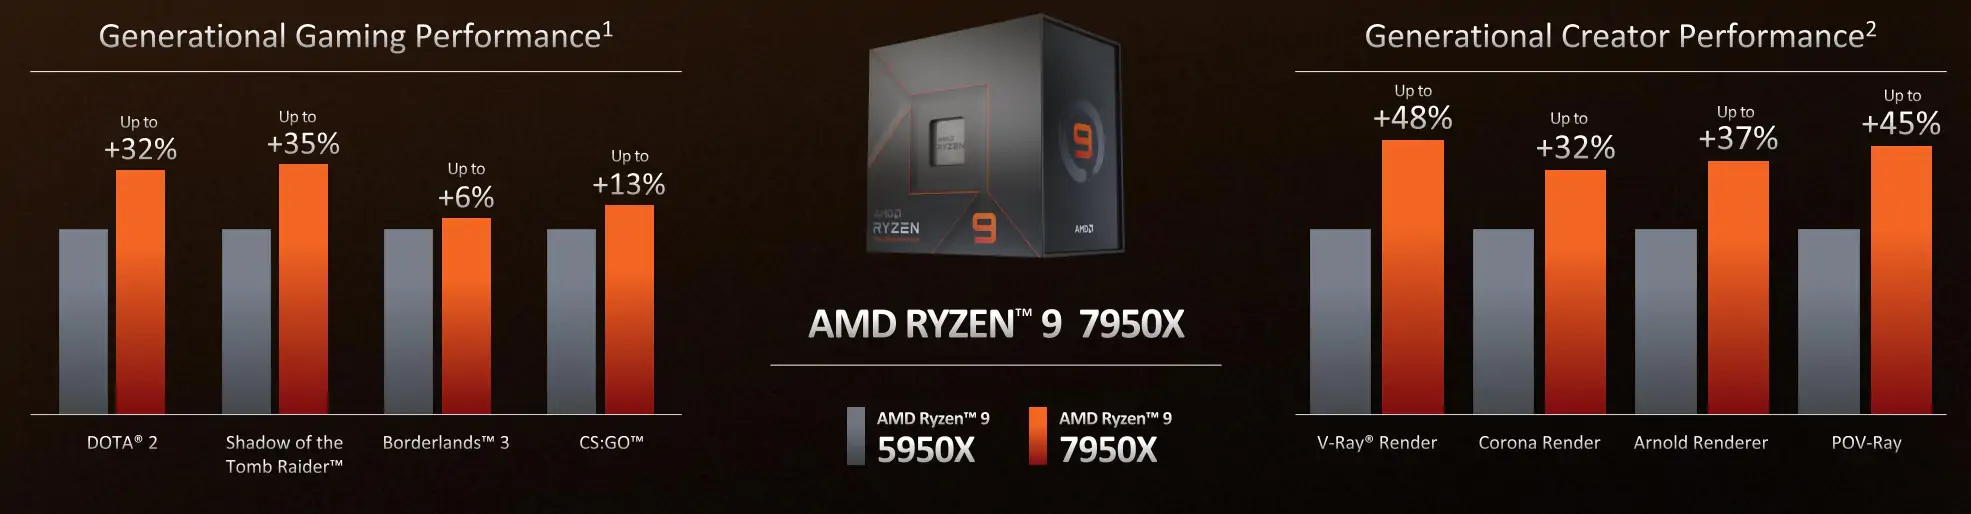 AMD Zen 4 обеспечивает повышение IPC на 13% по сравнению с Zen 3 при той же частоте